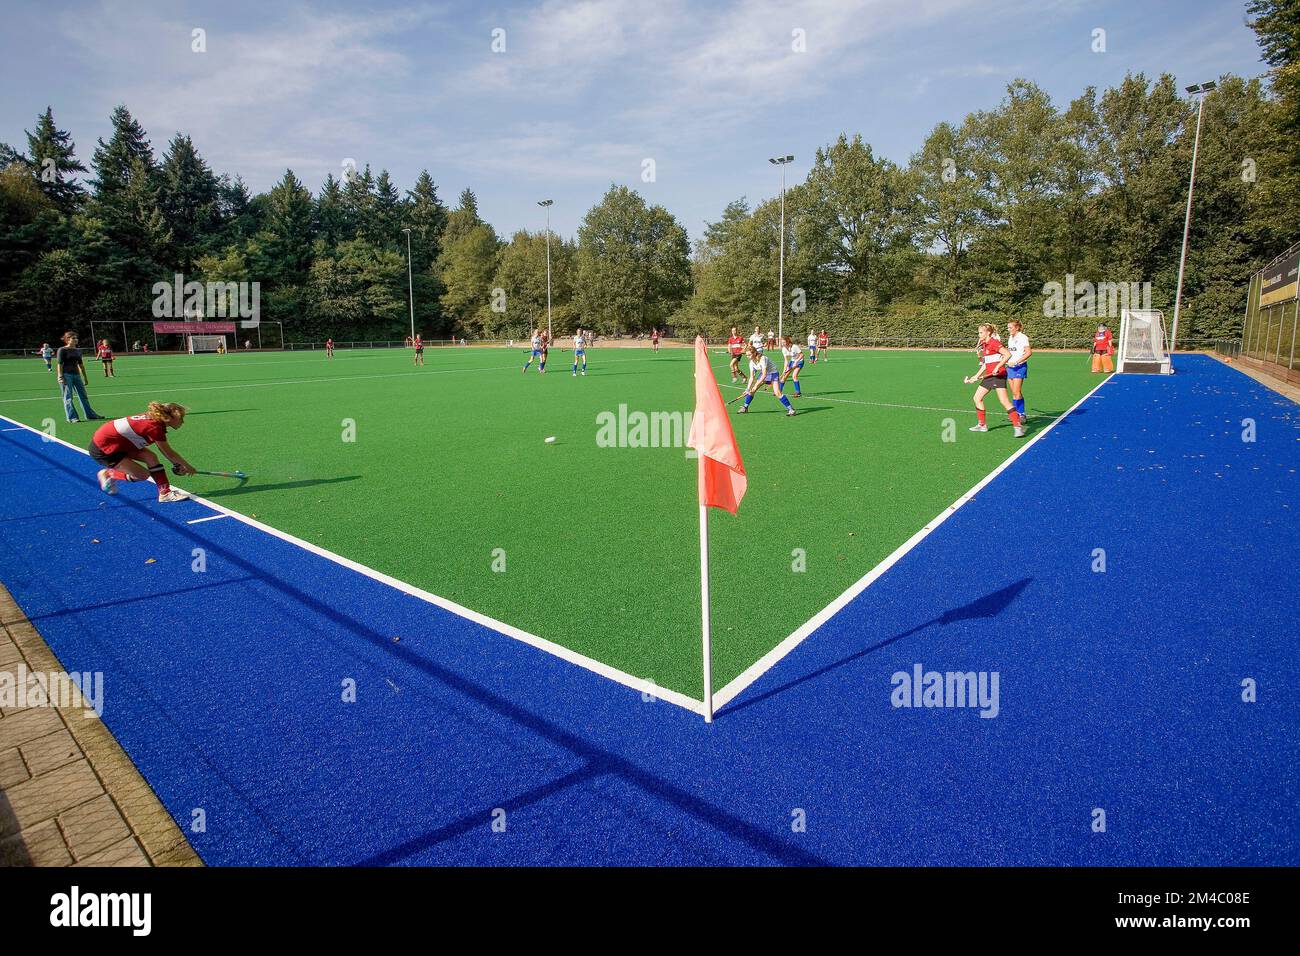 Paesi Bassi, un campo da hockey con erba sintetica, una superficie di fibre sintetiche che assomiglia ad erba naturale. Foto Stock